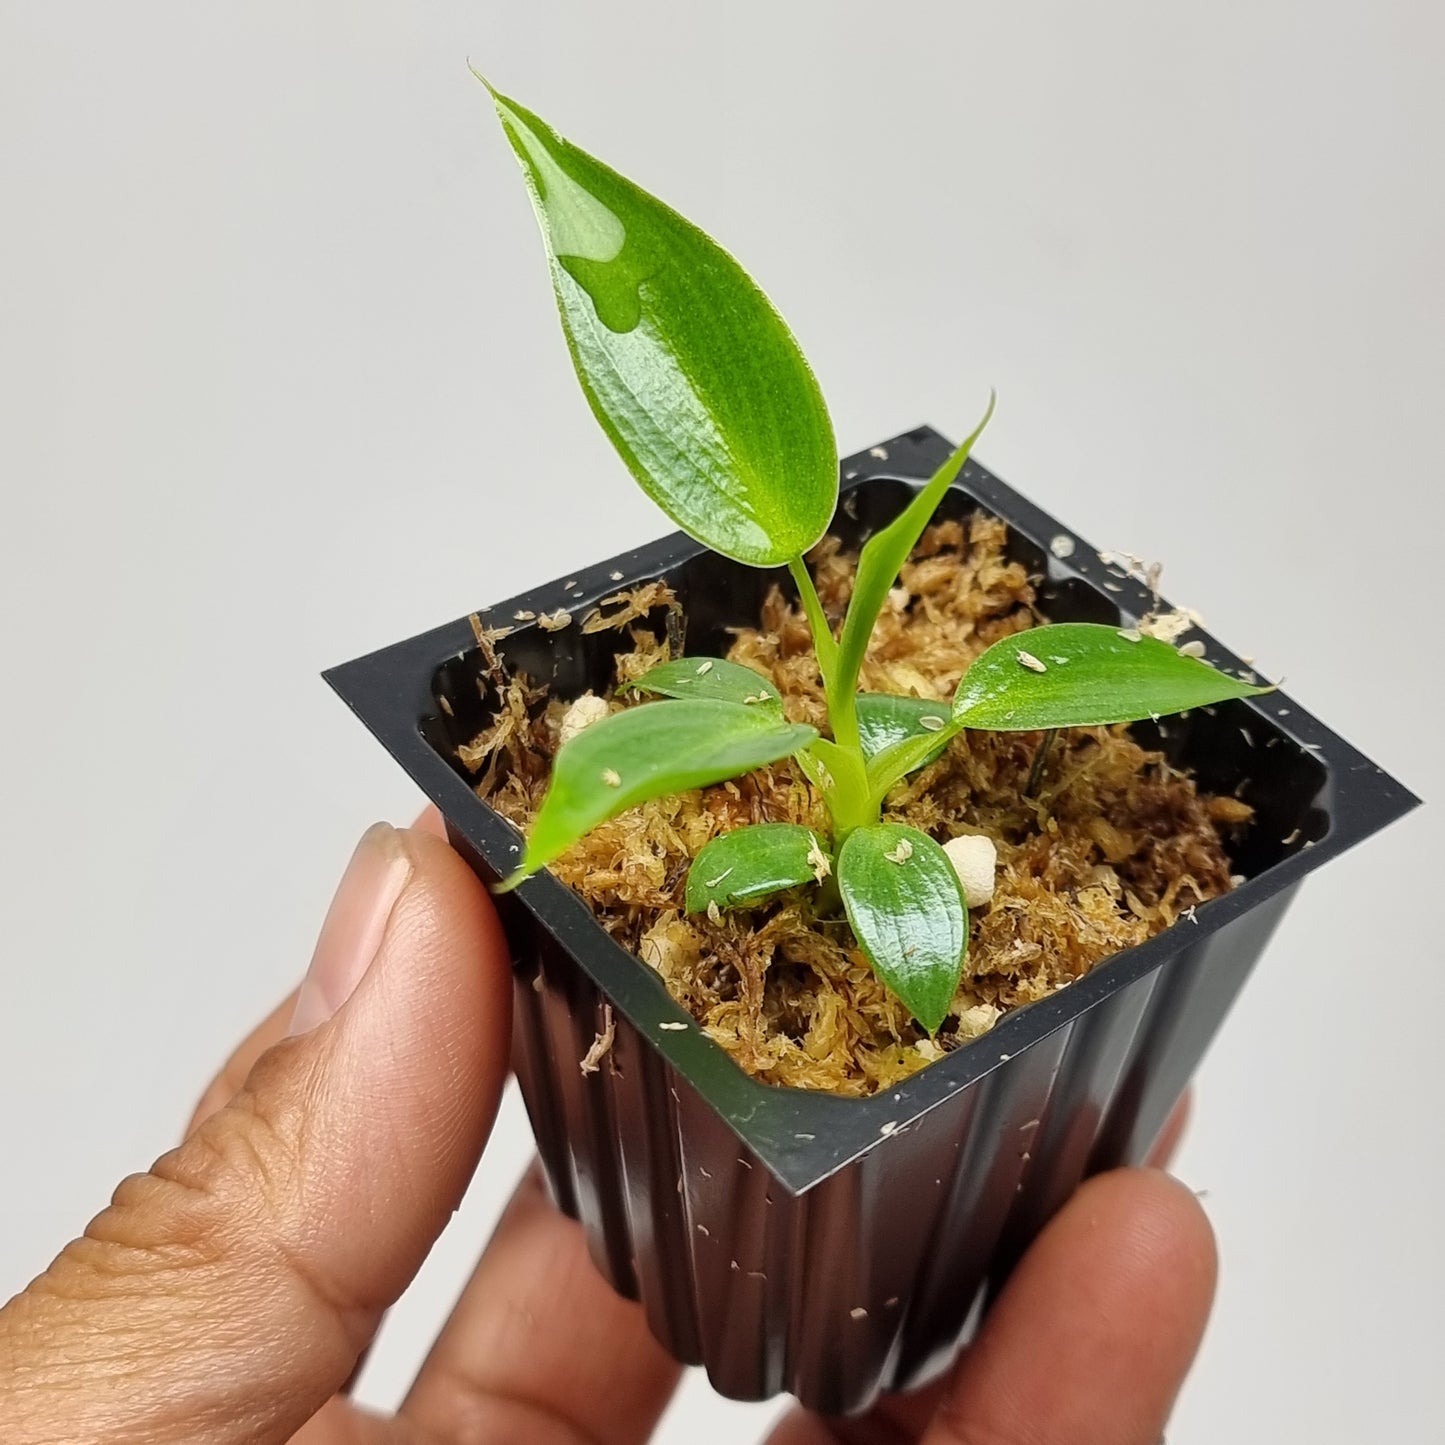 rare Philodendron spiritus sancti for sale in Perth Australia